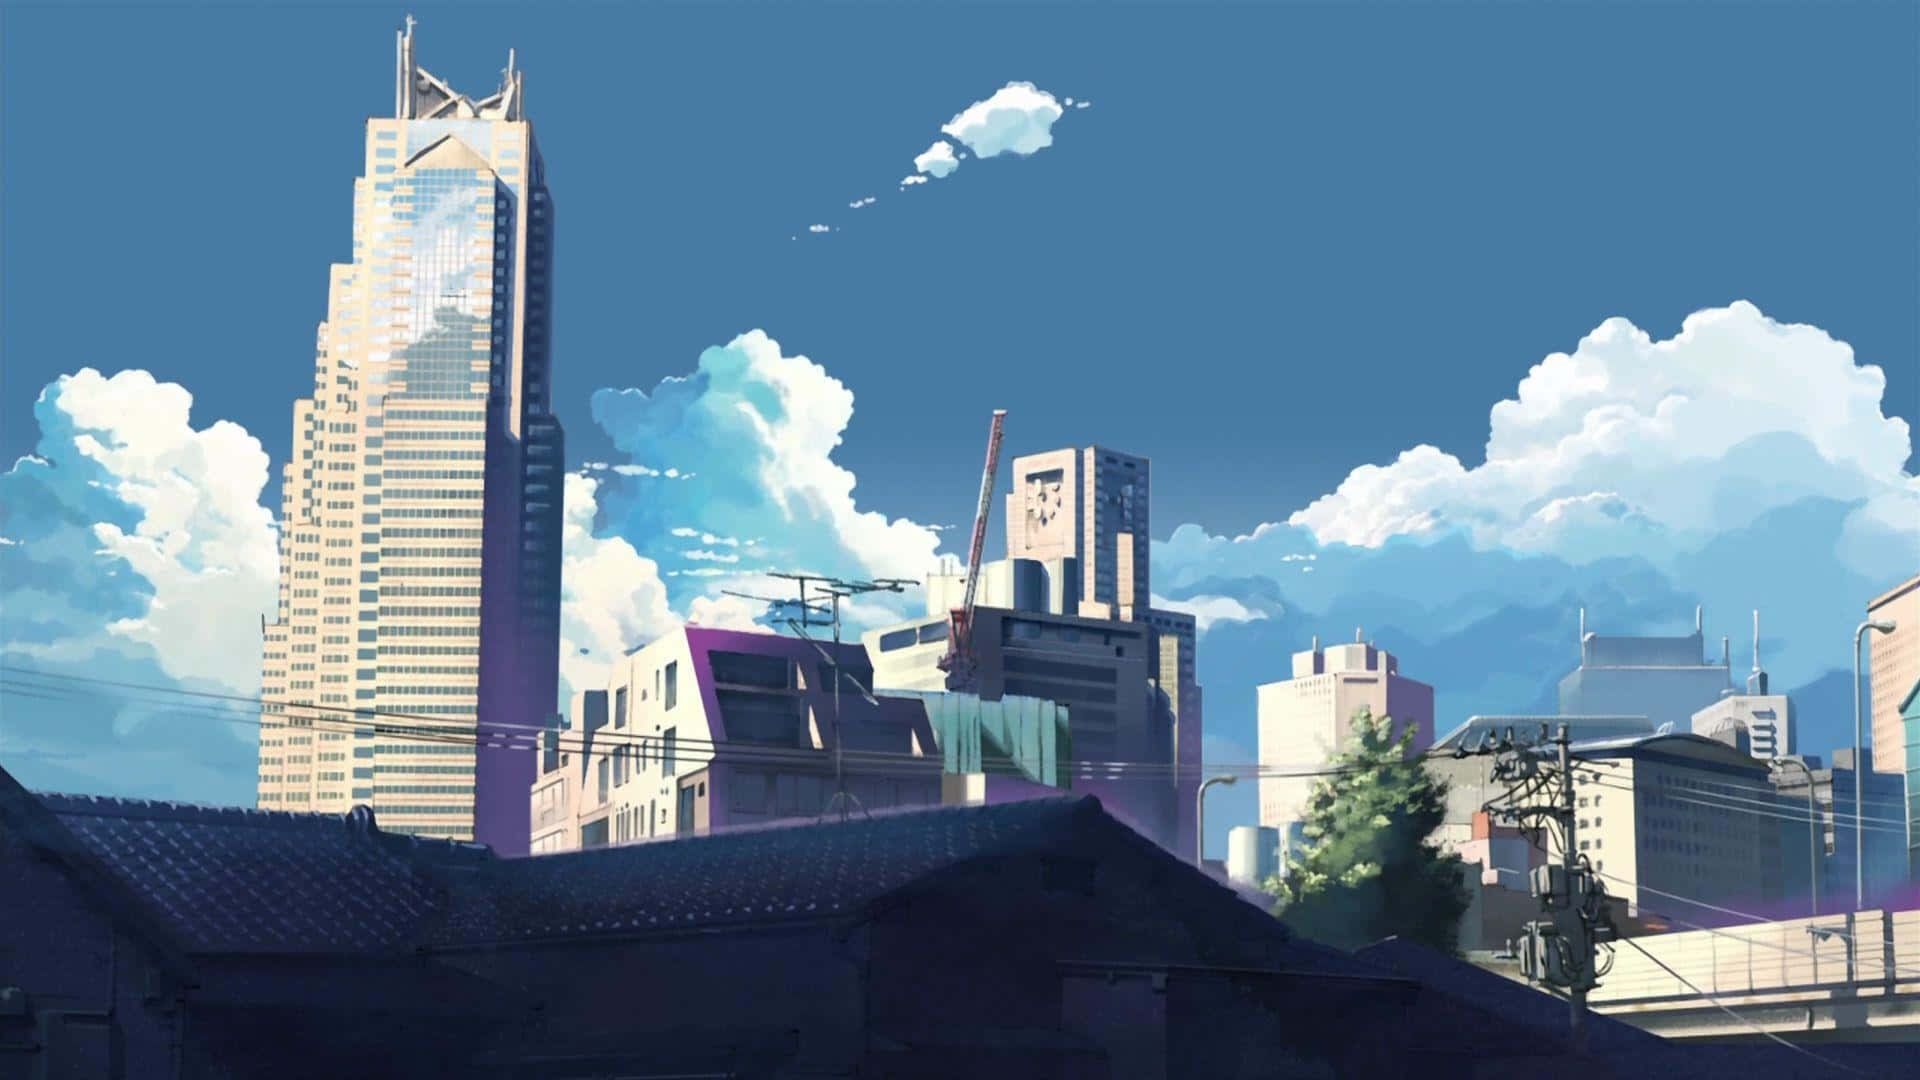 Einestadt Mit Gebäuden Und Wolken Im Hintergrund. Wallpaper